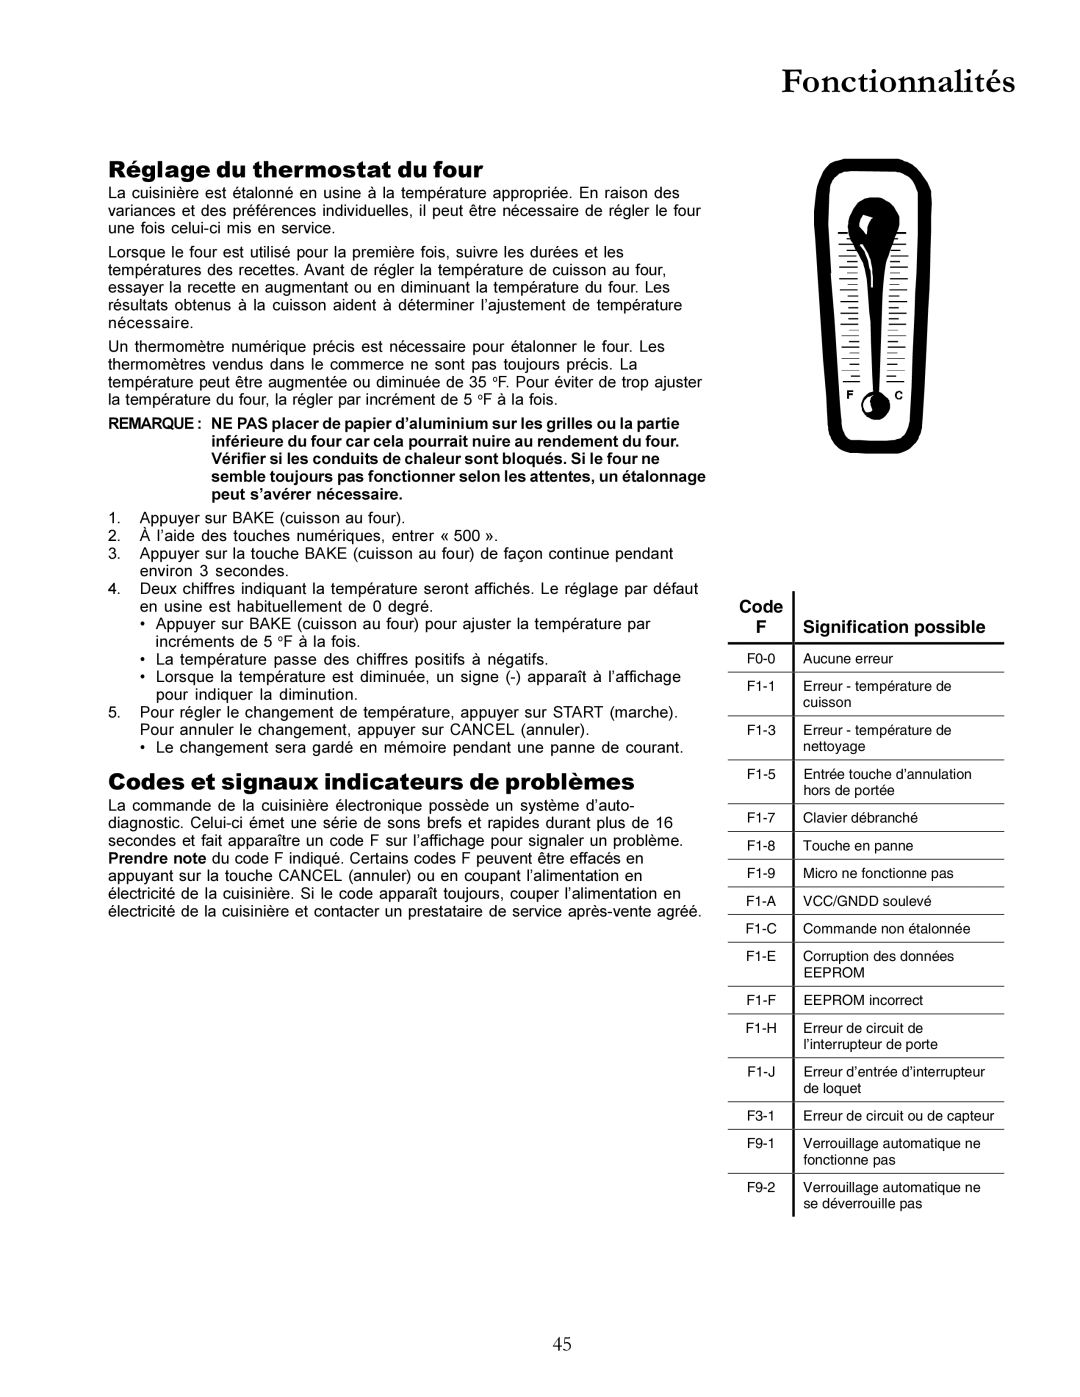 Amana ACF3355A owner manual Fonctionnalités, Réglage du thermostat du four, Codes et signaux indicateurs de problèmes 